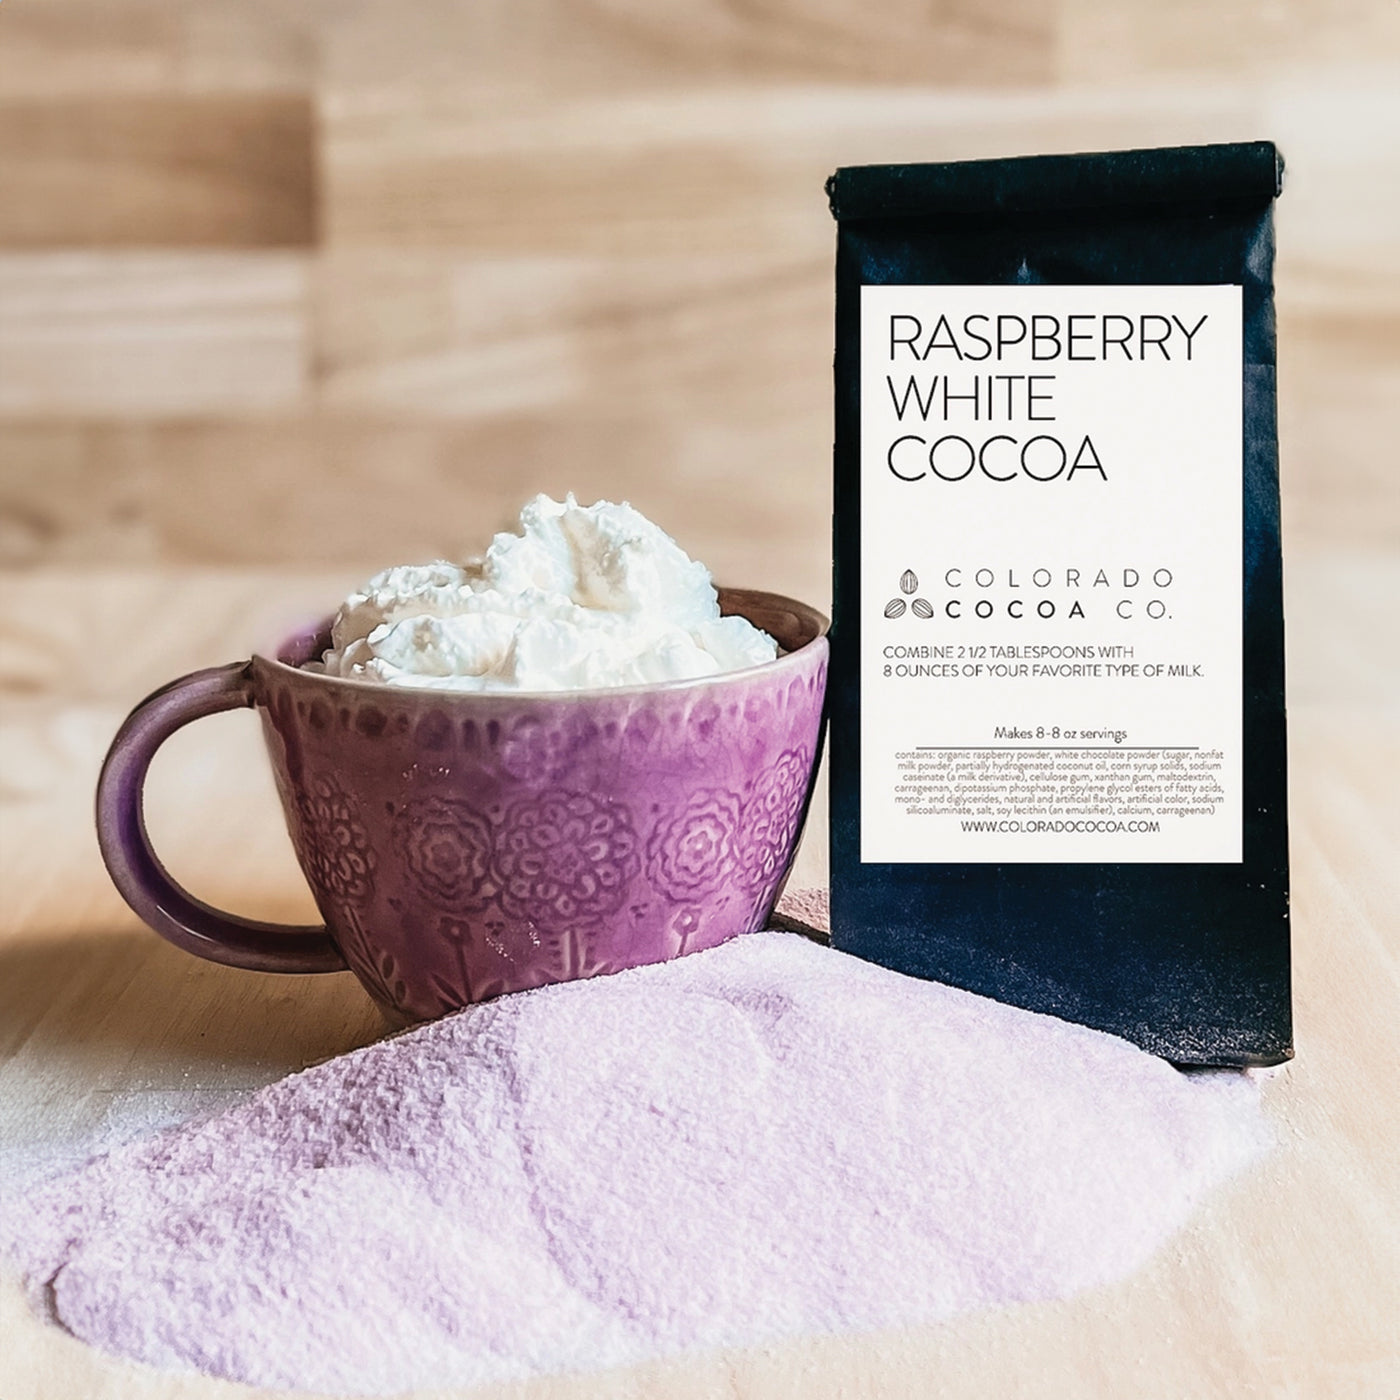 Colorado Cocoa Company | Raspberry White Cocoa